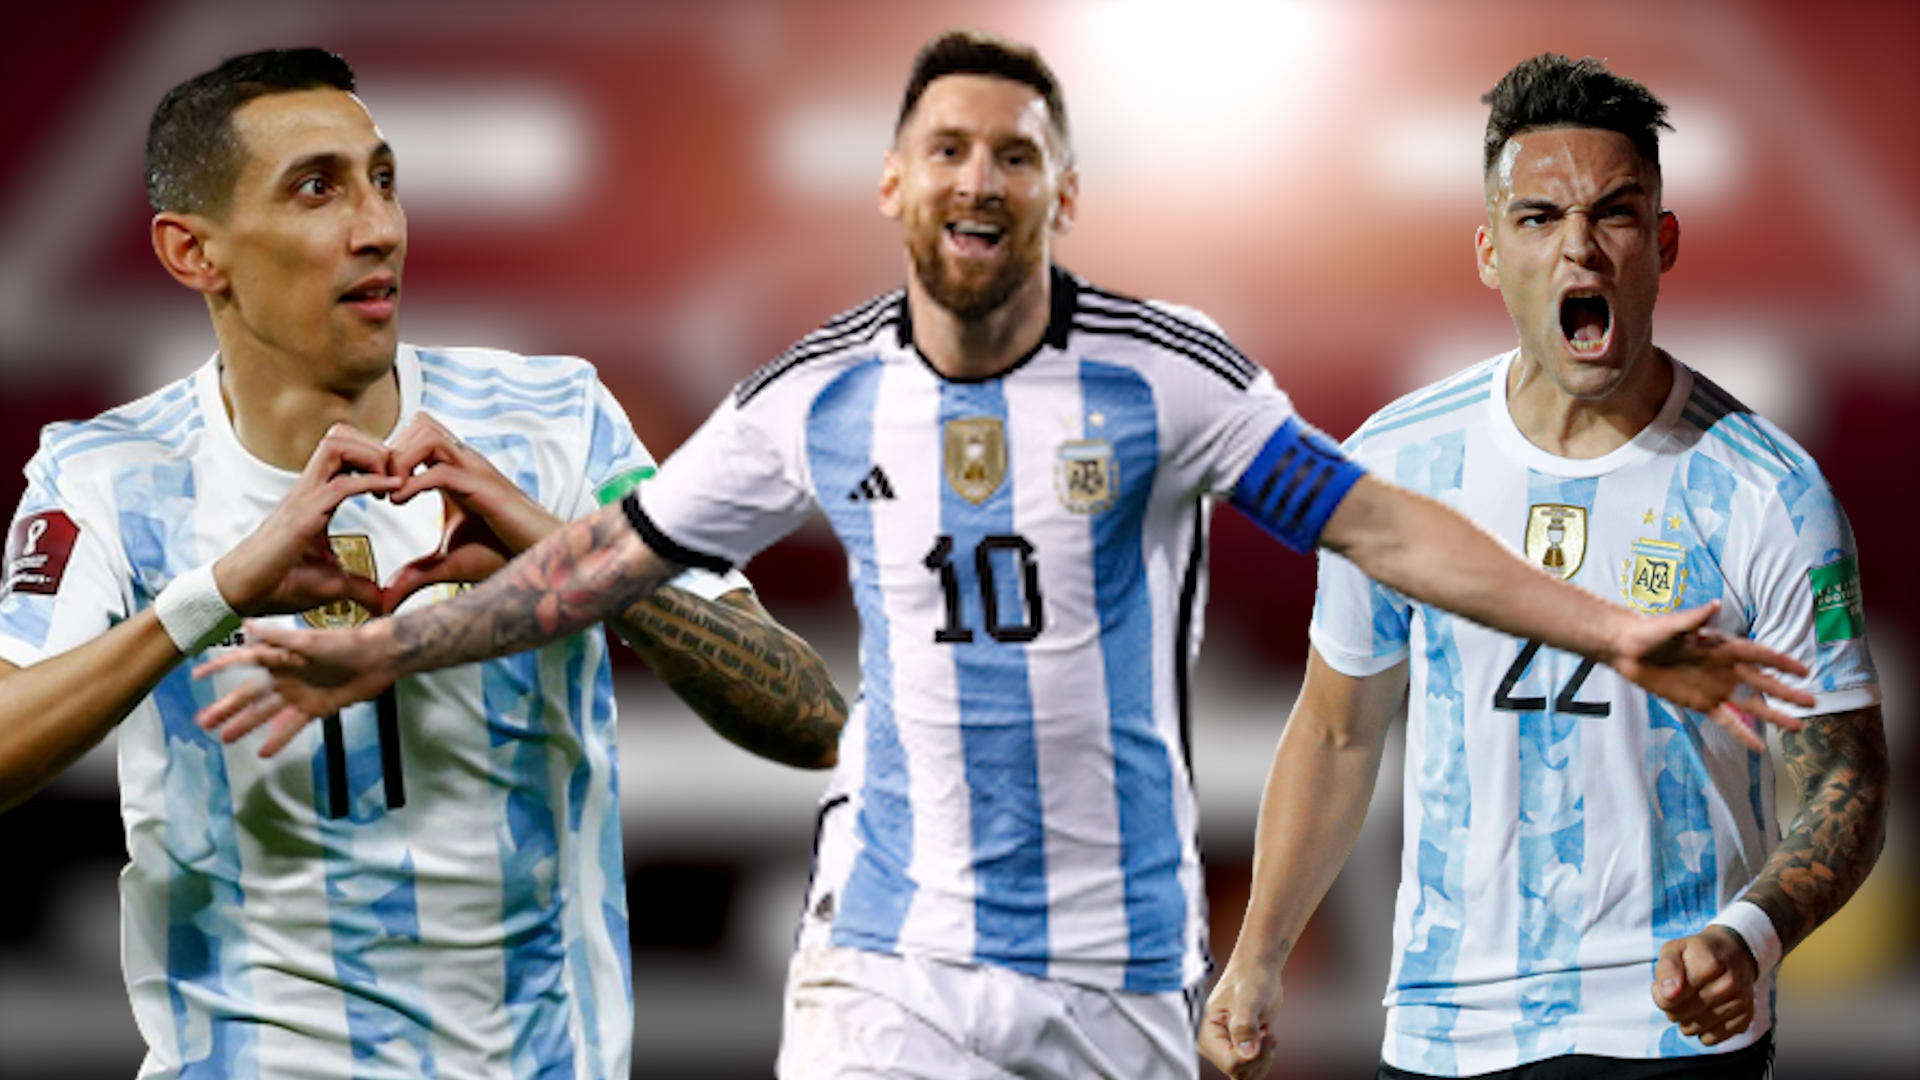 Đội hình tuyển Argentina: Nếu bạn là fan của đội tuyển bóng đá Argentina, thì không thể bỏ qua xem đội hình tuyển Argentina mới nhất. Đội bóng này có nhiều cầu thủ tài năng và hứa hẹn sẽ đem lại nhiều chiến thắng cho đất nước của họ tại các giải đấu quốc tế. Hãy xem ngay hình ảnh liên quan đến đội hình tuyển Argentina để cập nhật thông tin mới nhất về đội bóng này.